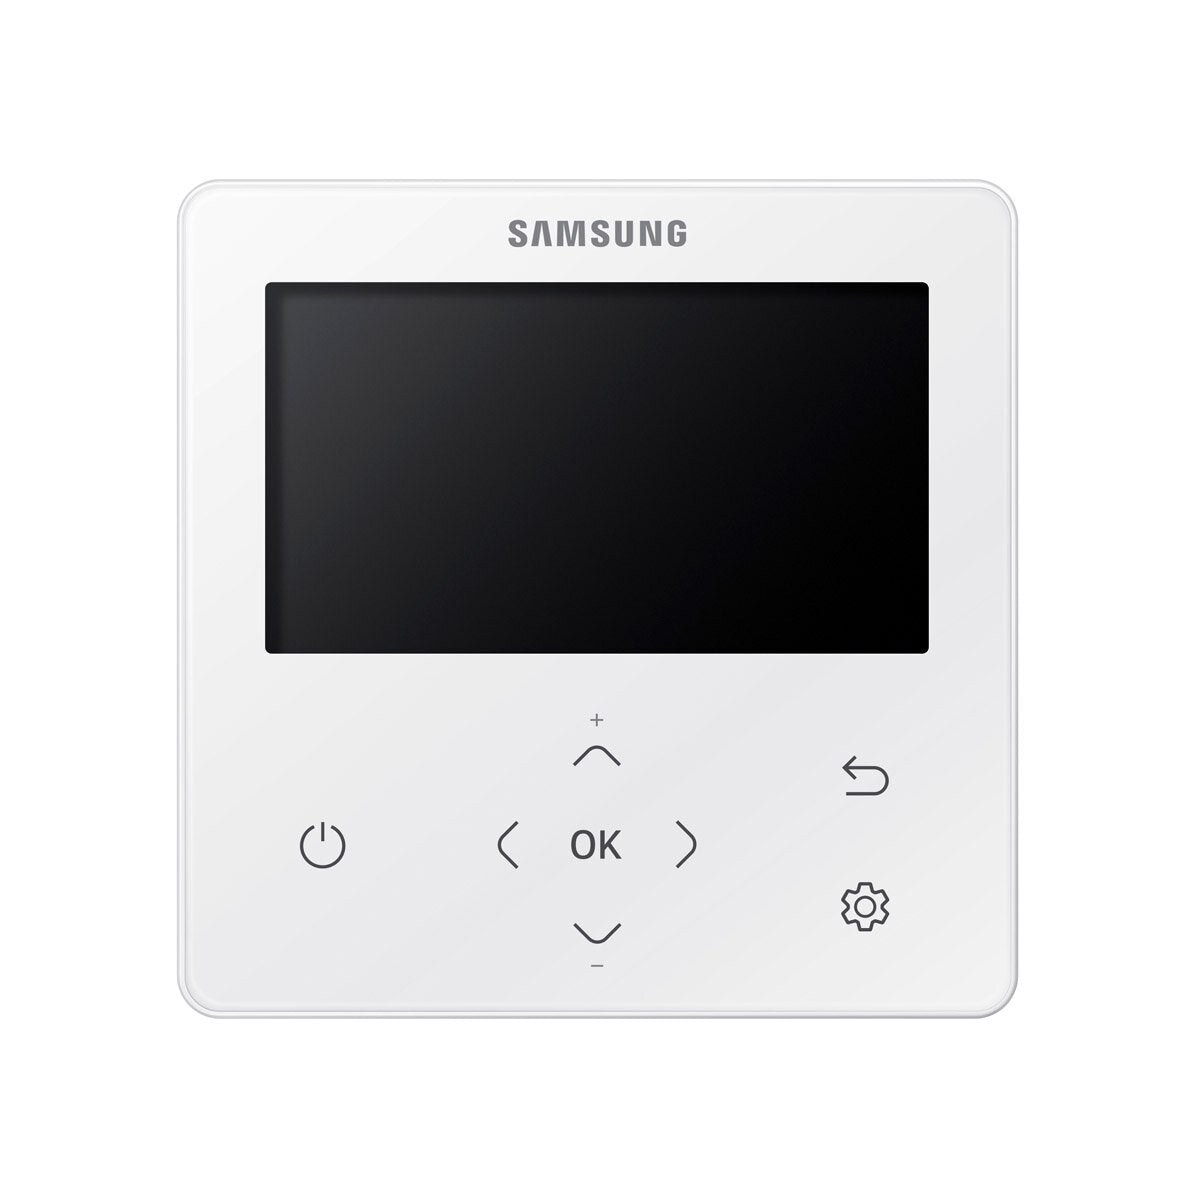 Samsung Air Conditioner Cassette WindFree 1 Way dual split 9000 + 9000 BTU inverter A +++ outdoor unit 4.0 kW